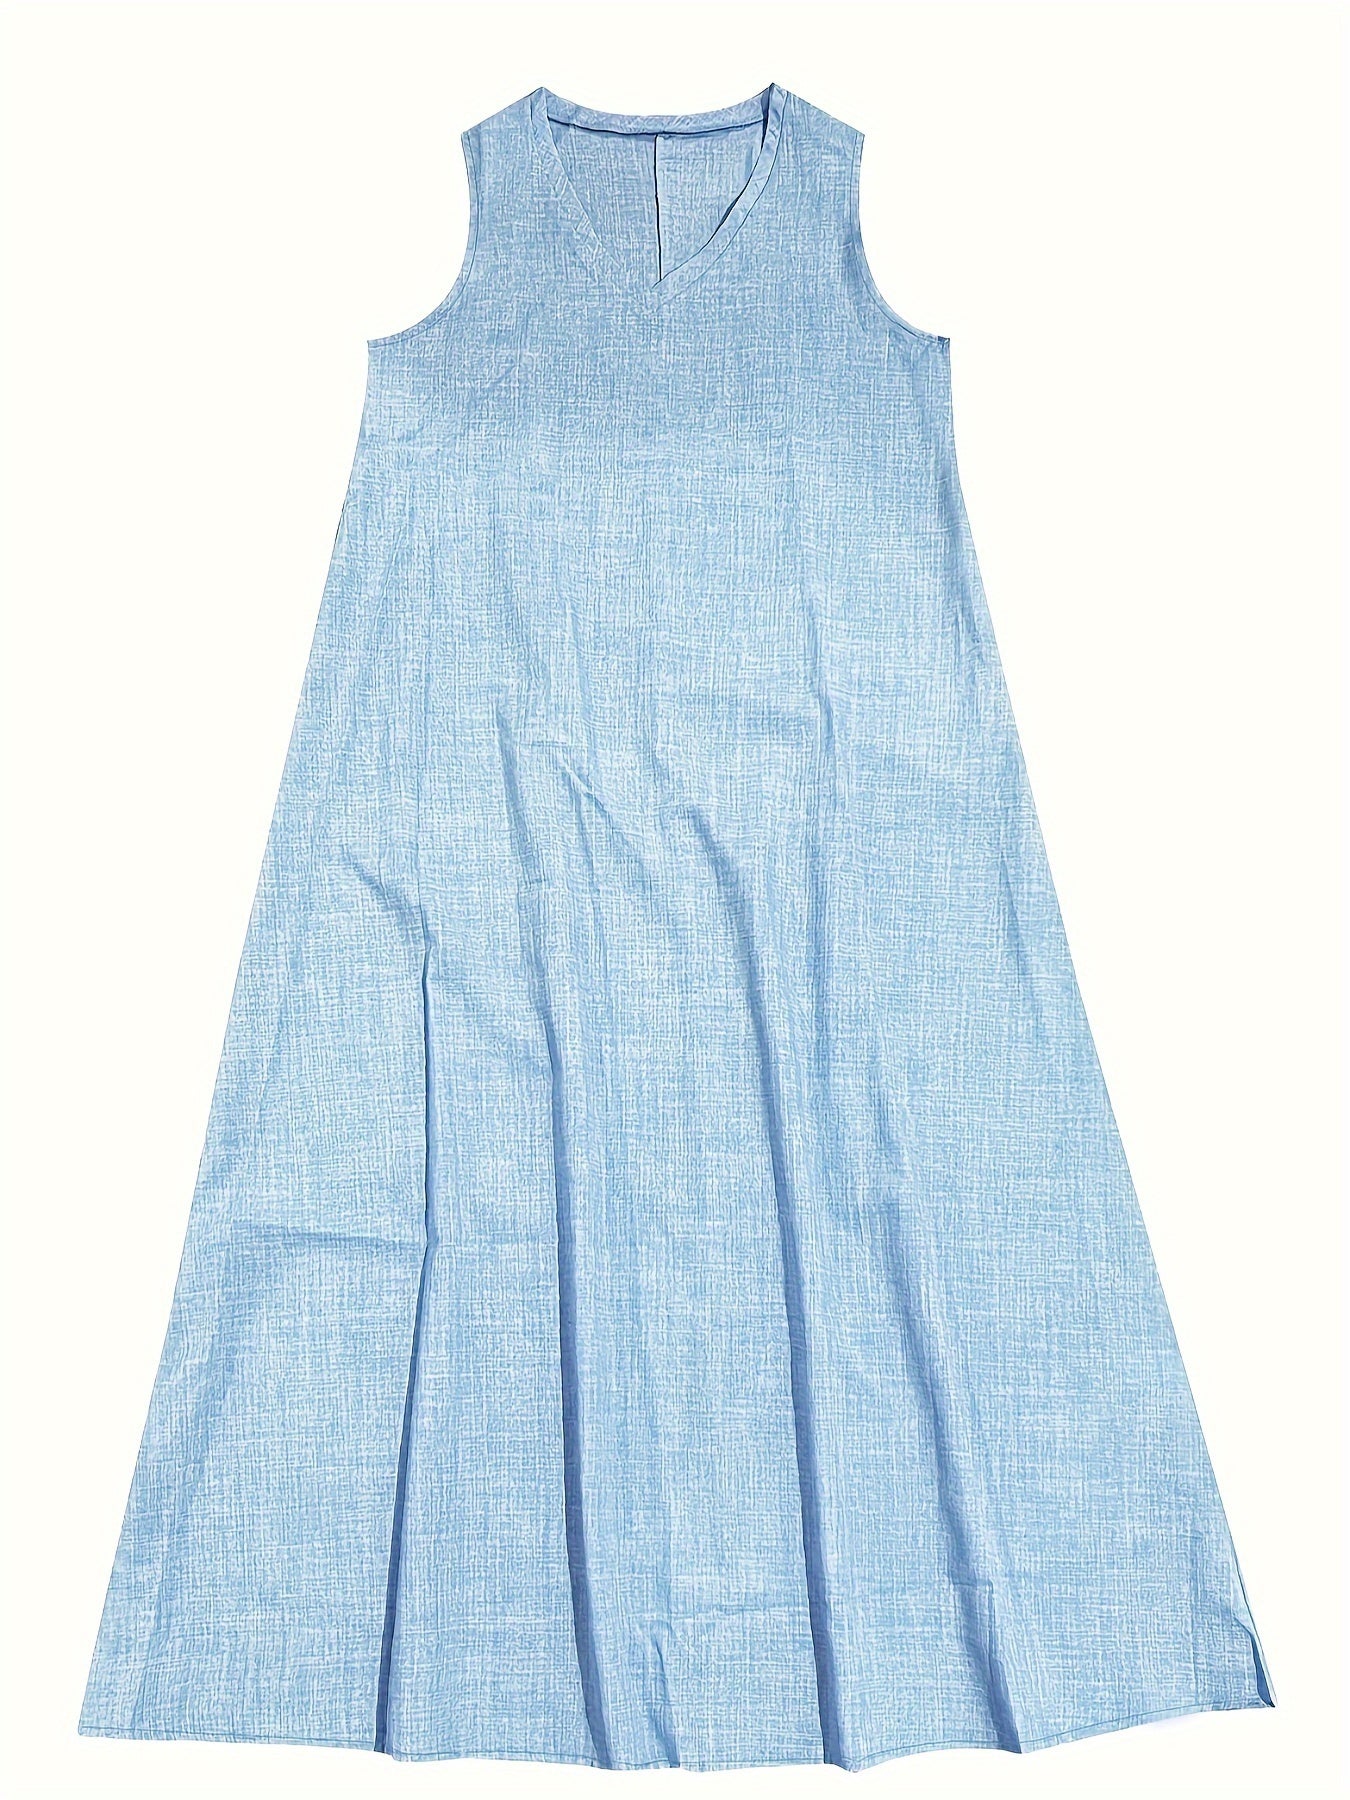 Casual Sleeveless Linen Dress - Bohemian Long Maxi Dress - Casual Summer Dress